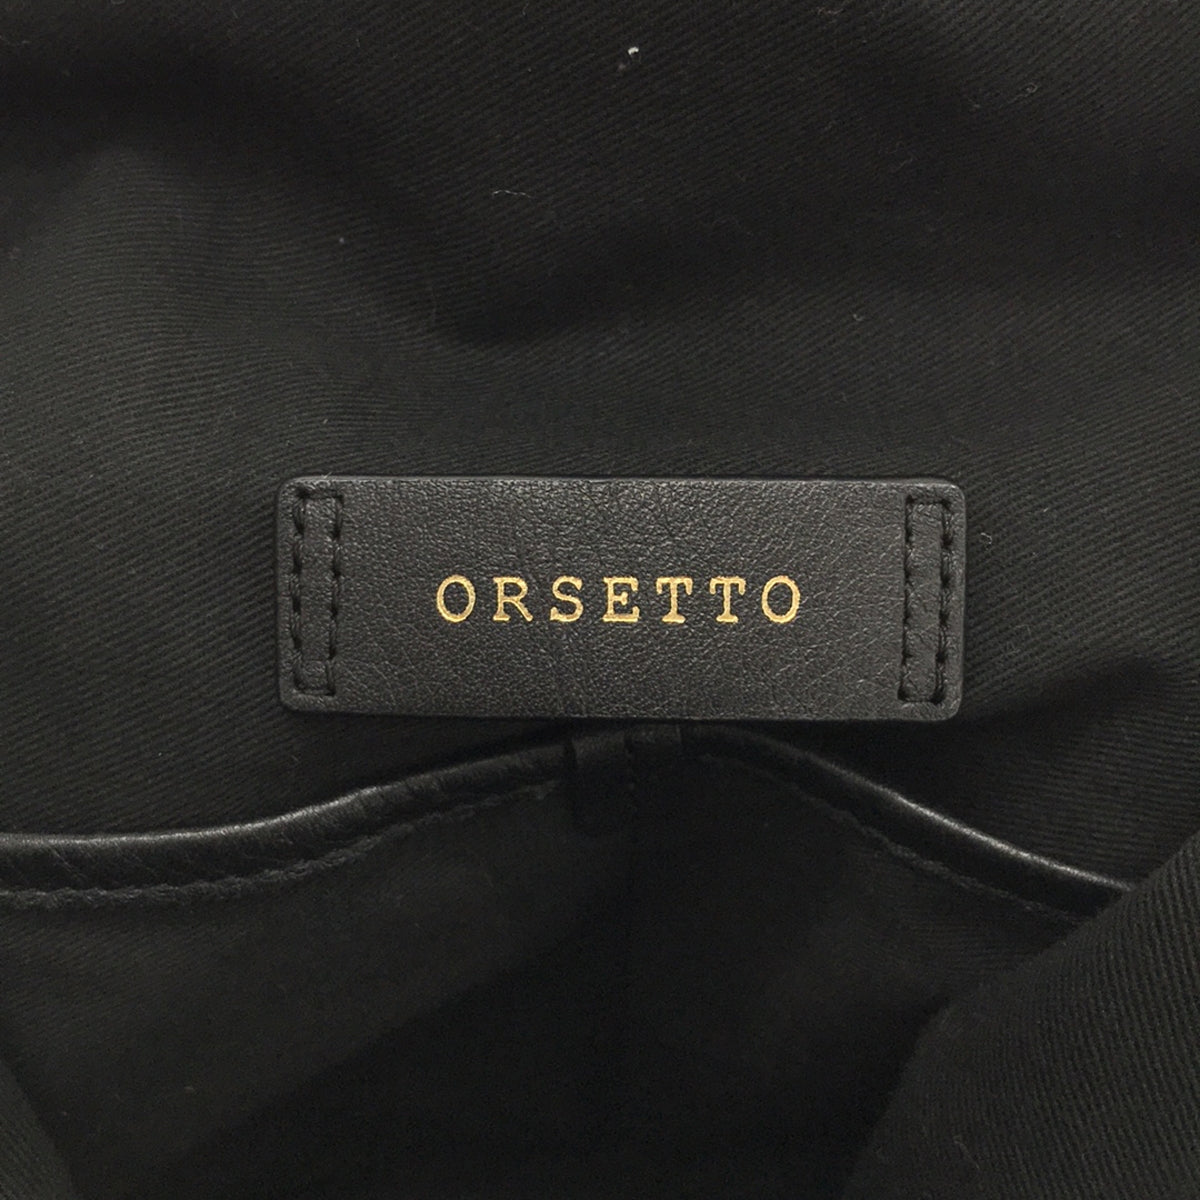 ORSETTO / オルセット | ナイロンストラップショルダーバッグ |